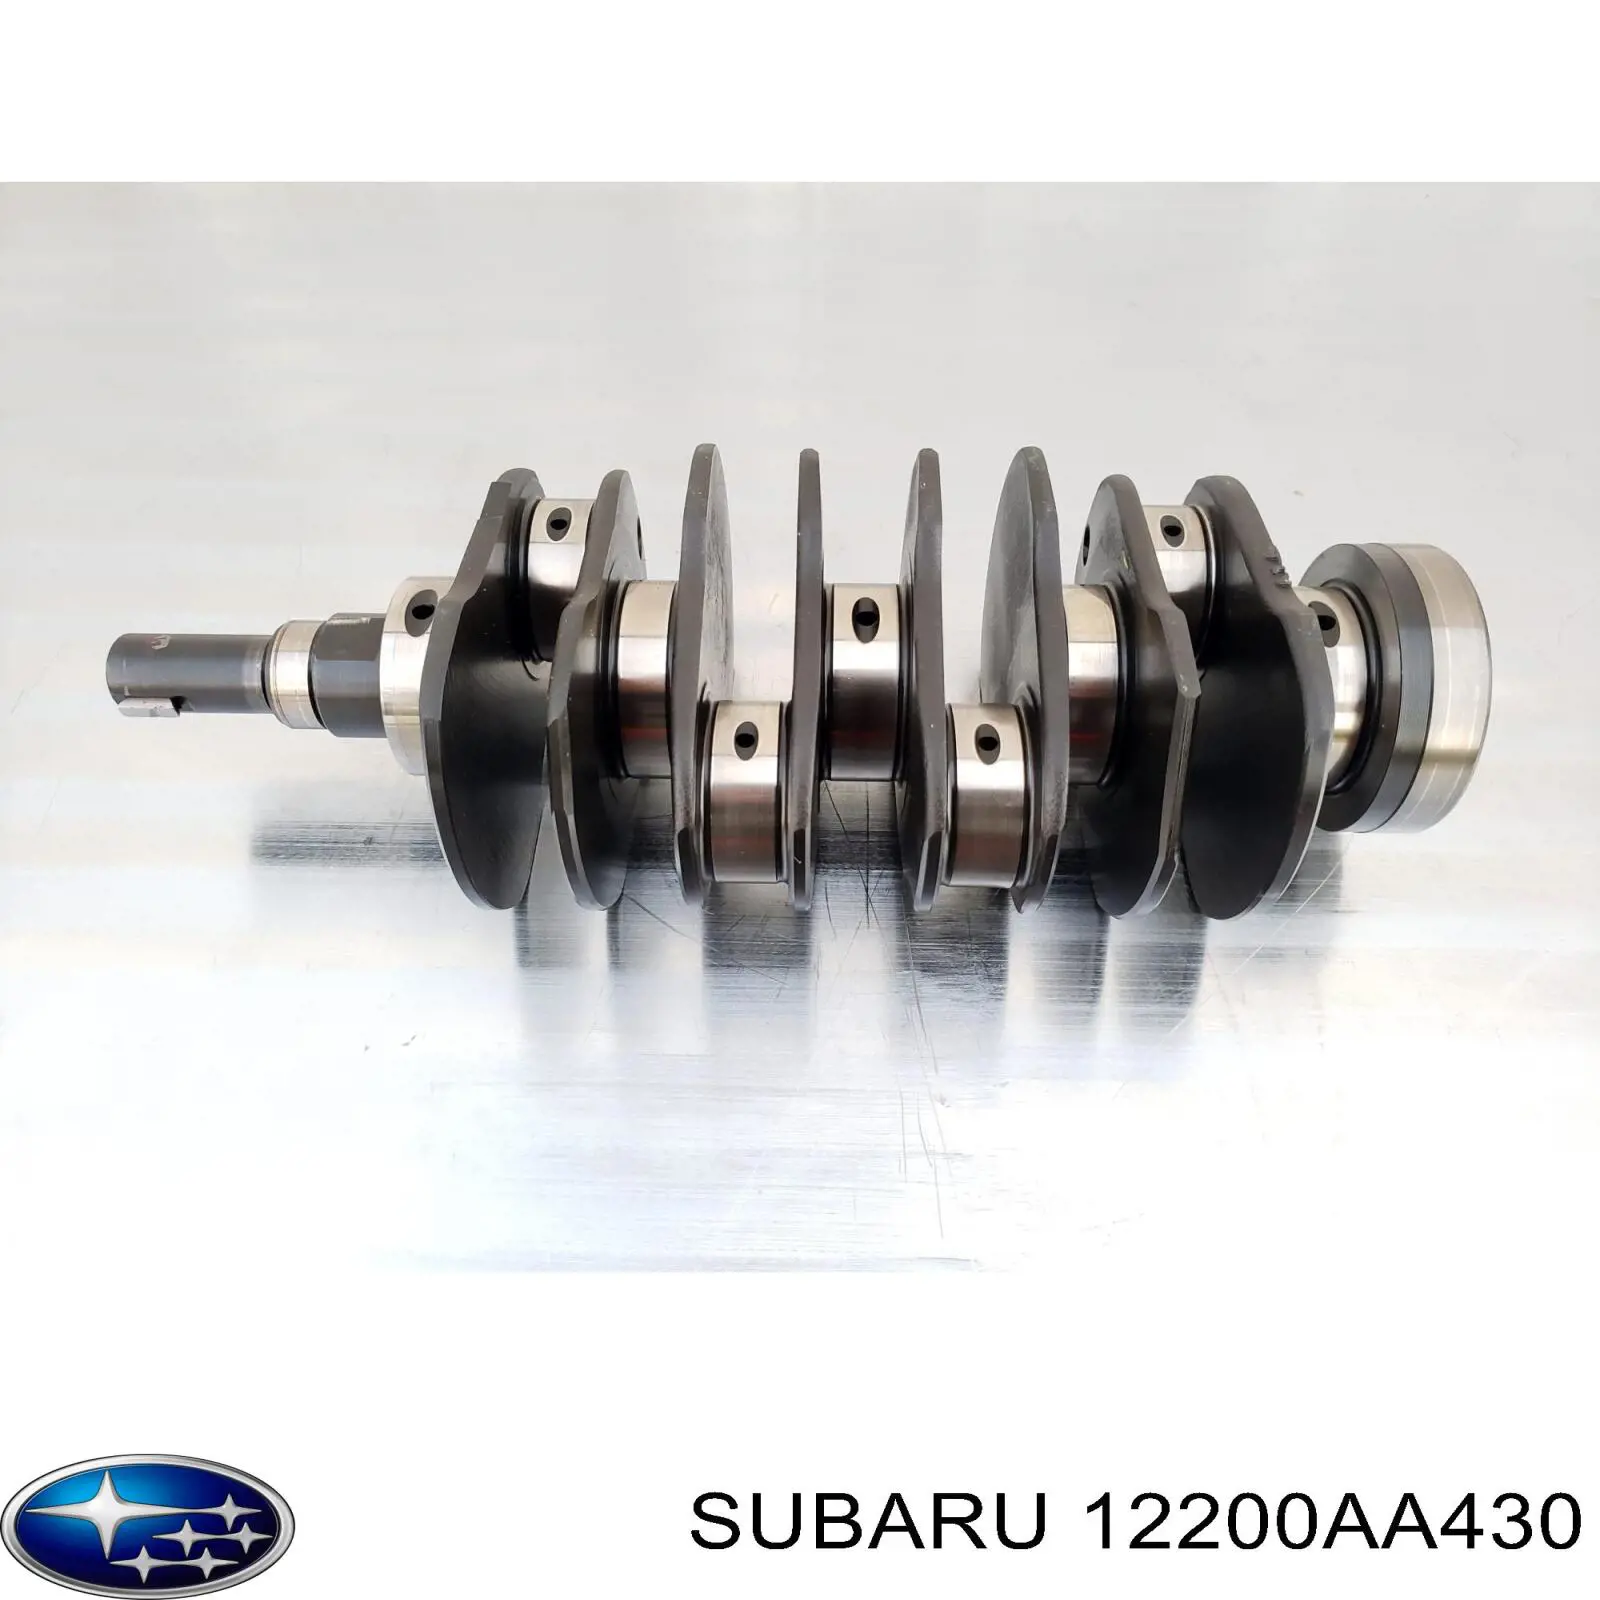 12200AA430 Subaru cambota de motor